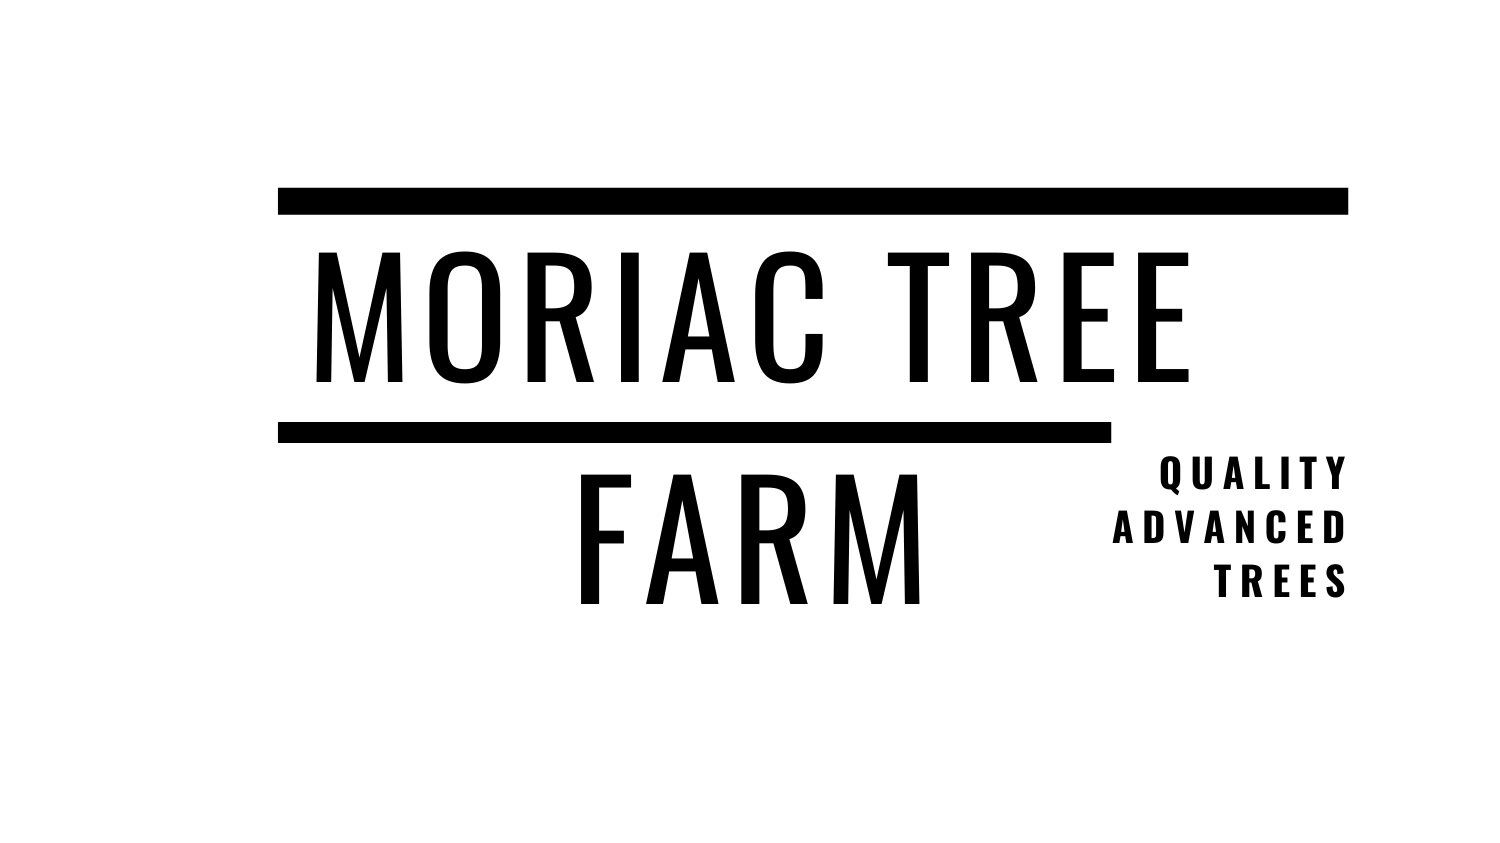 Moriac Tree Farm | Quality Advanced Trees